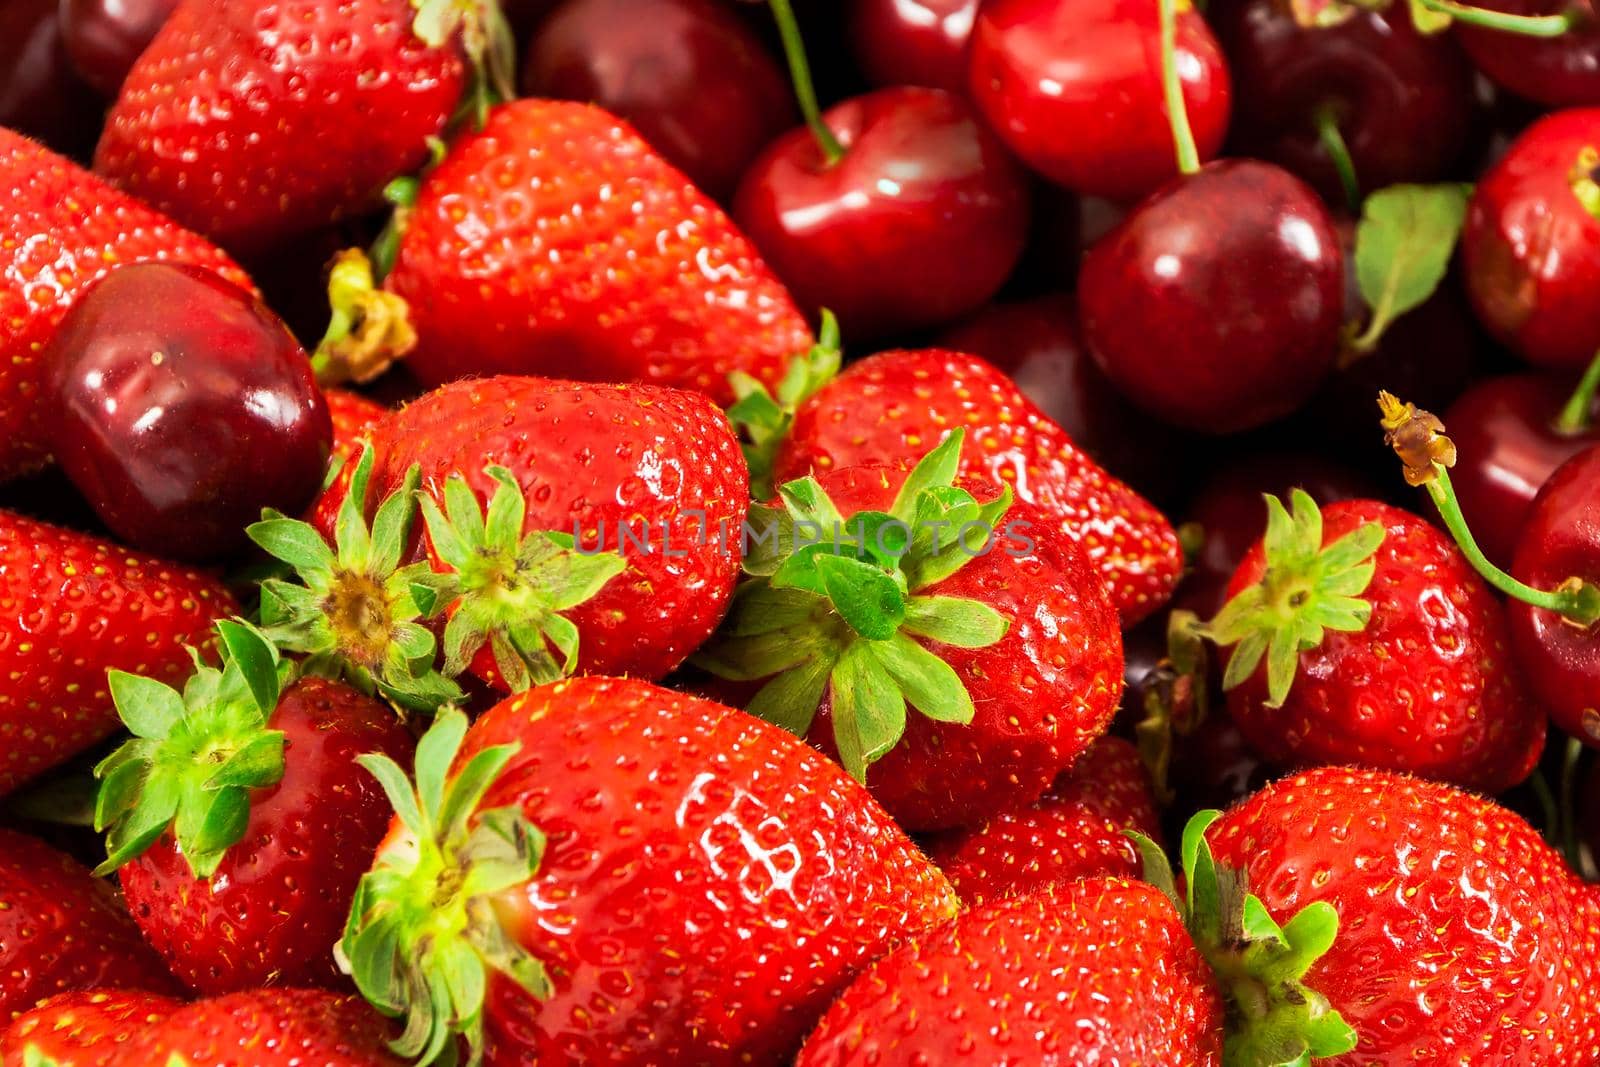 Closeup of fresh strawberries and cherries